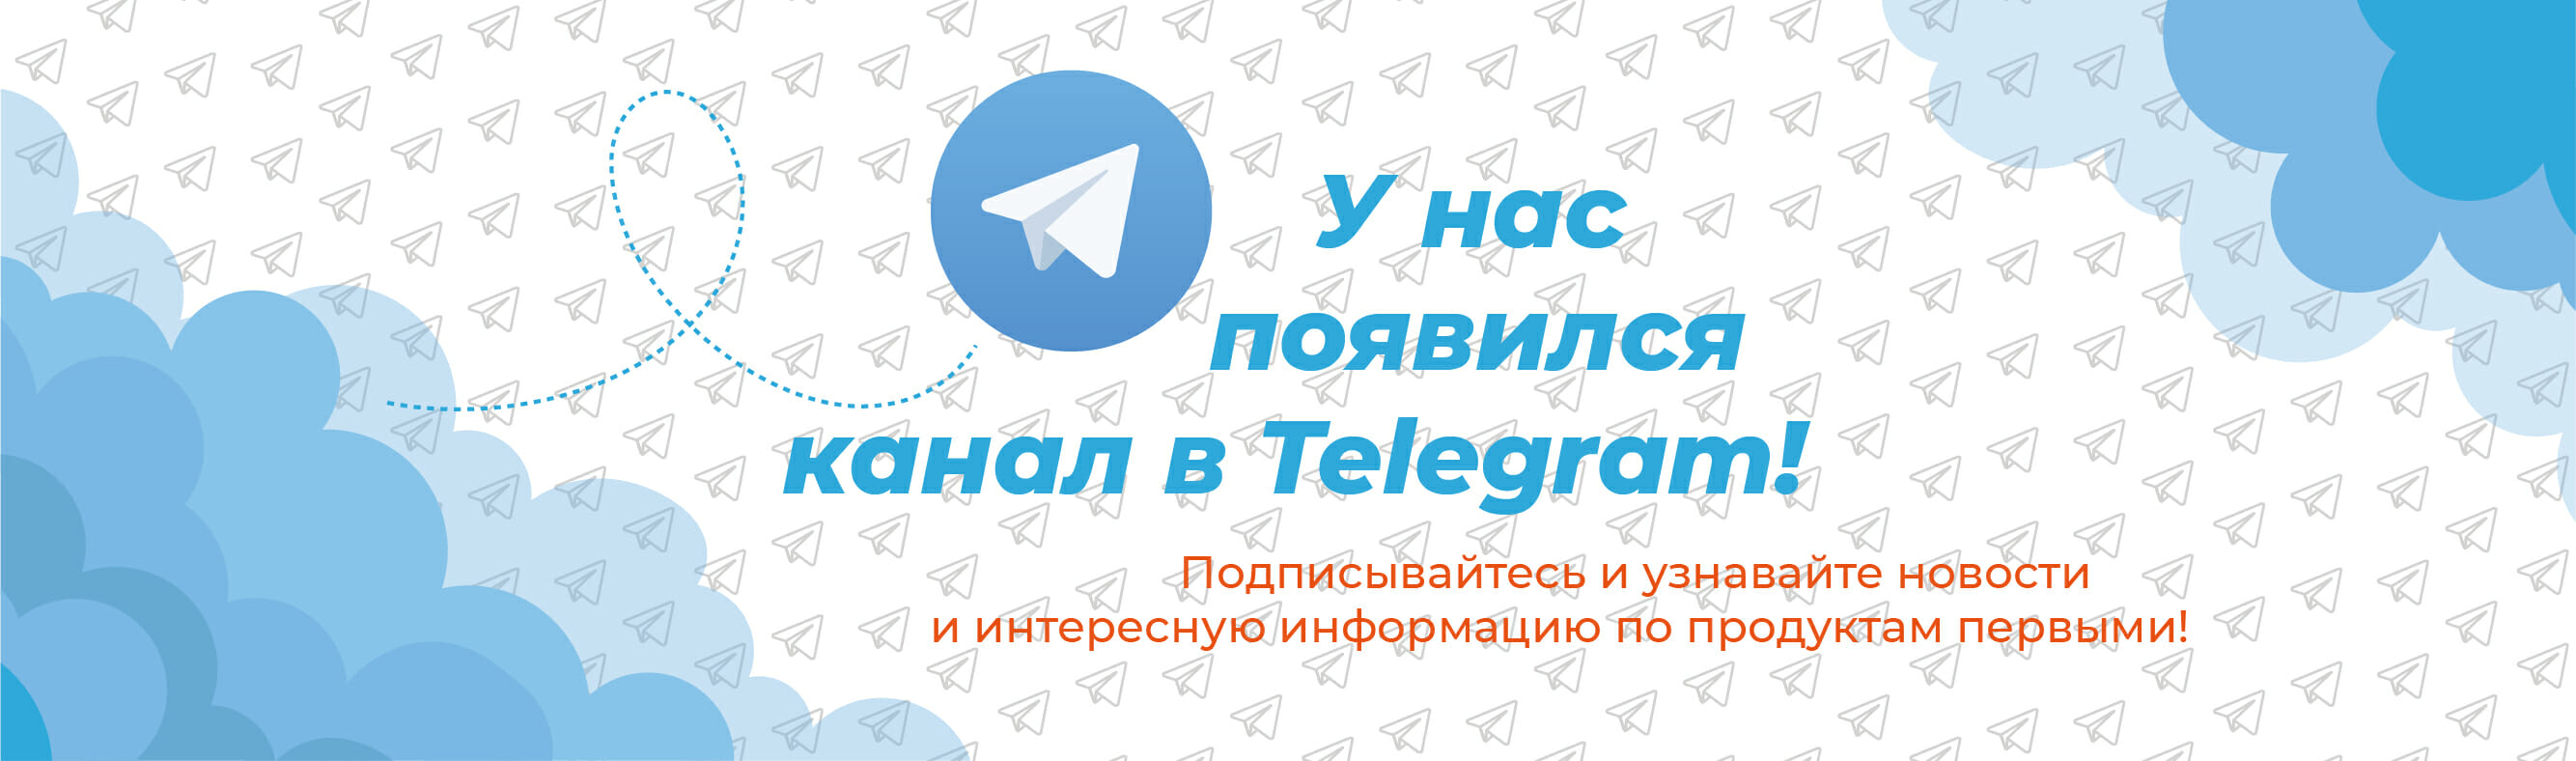 banner telegram